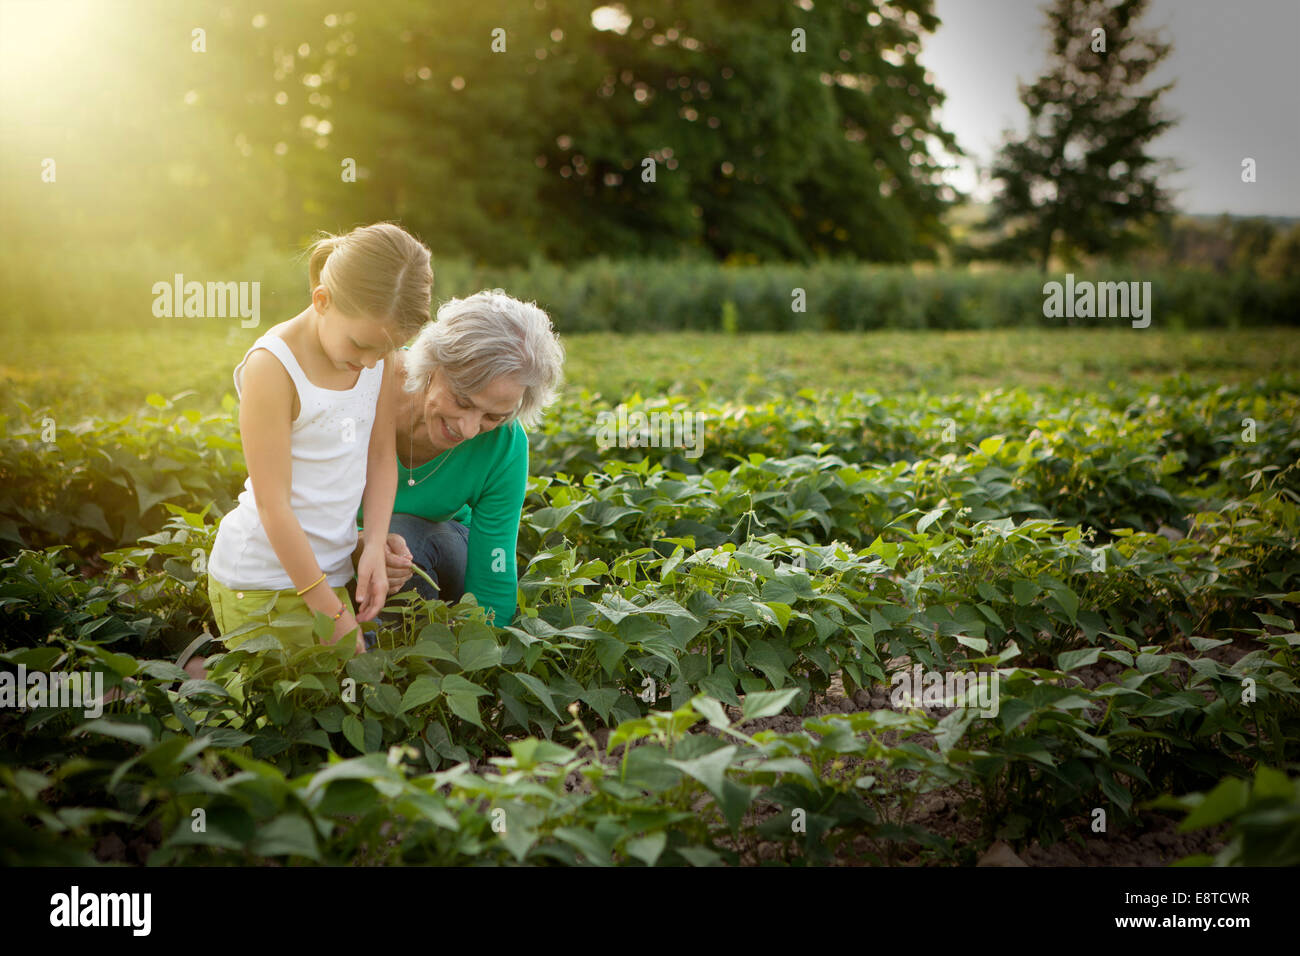 Grand-mère de race blanche et ferme sur les plantes granddaughter picking Banque D'Images